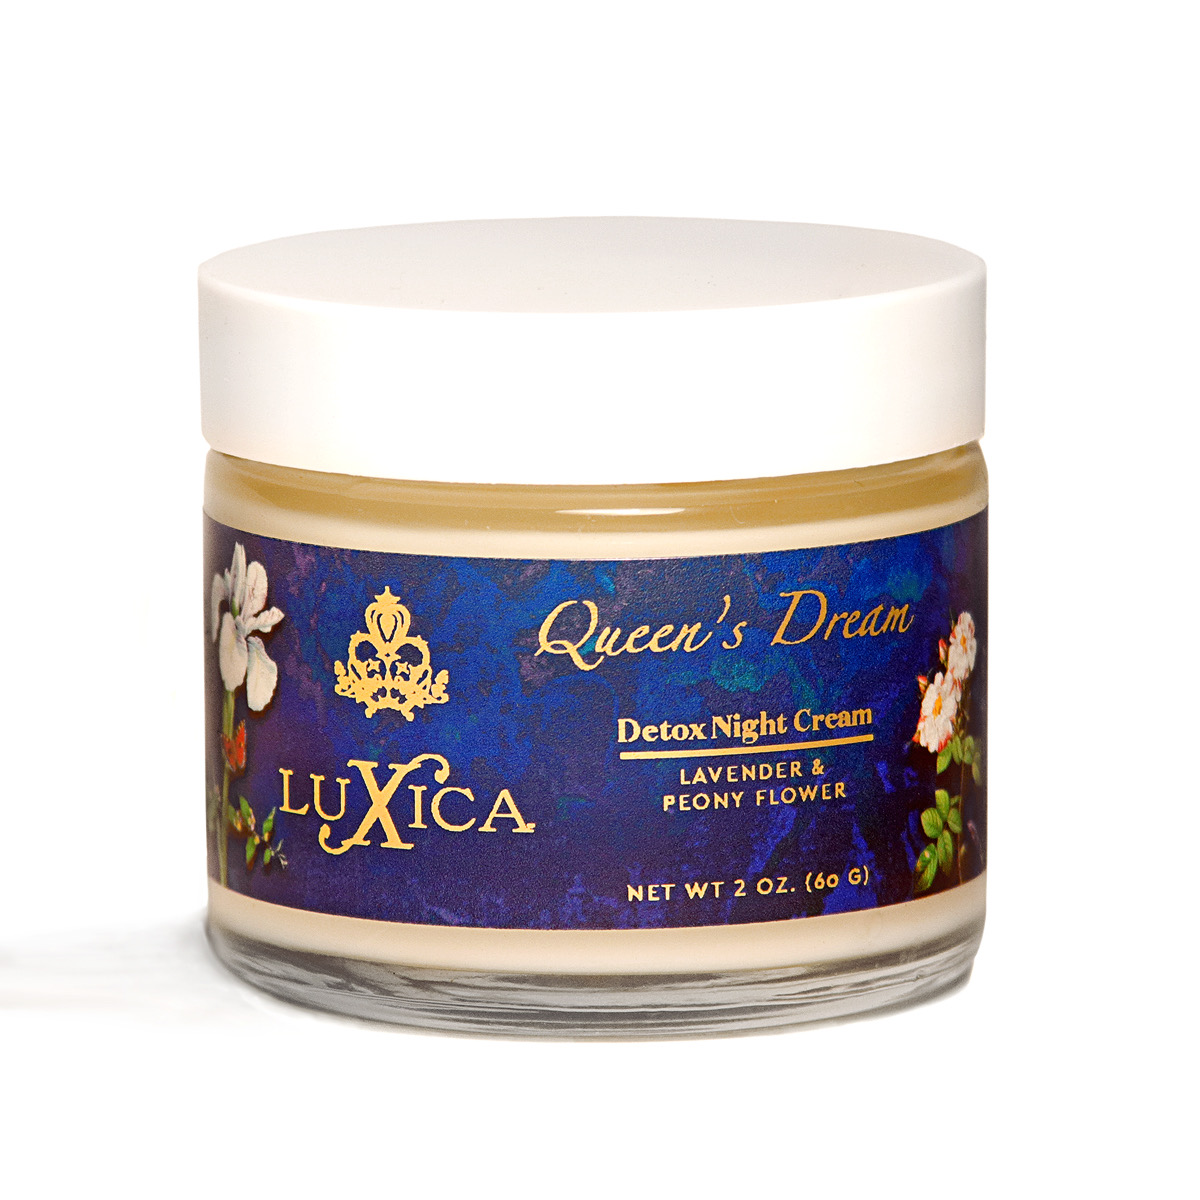 Queens Dream Detox Night Cream